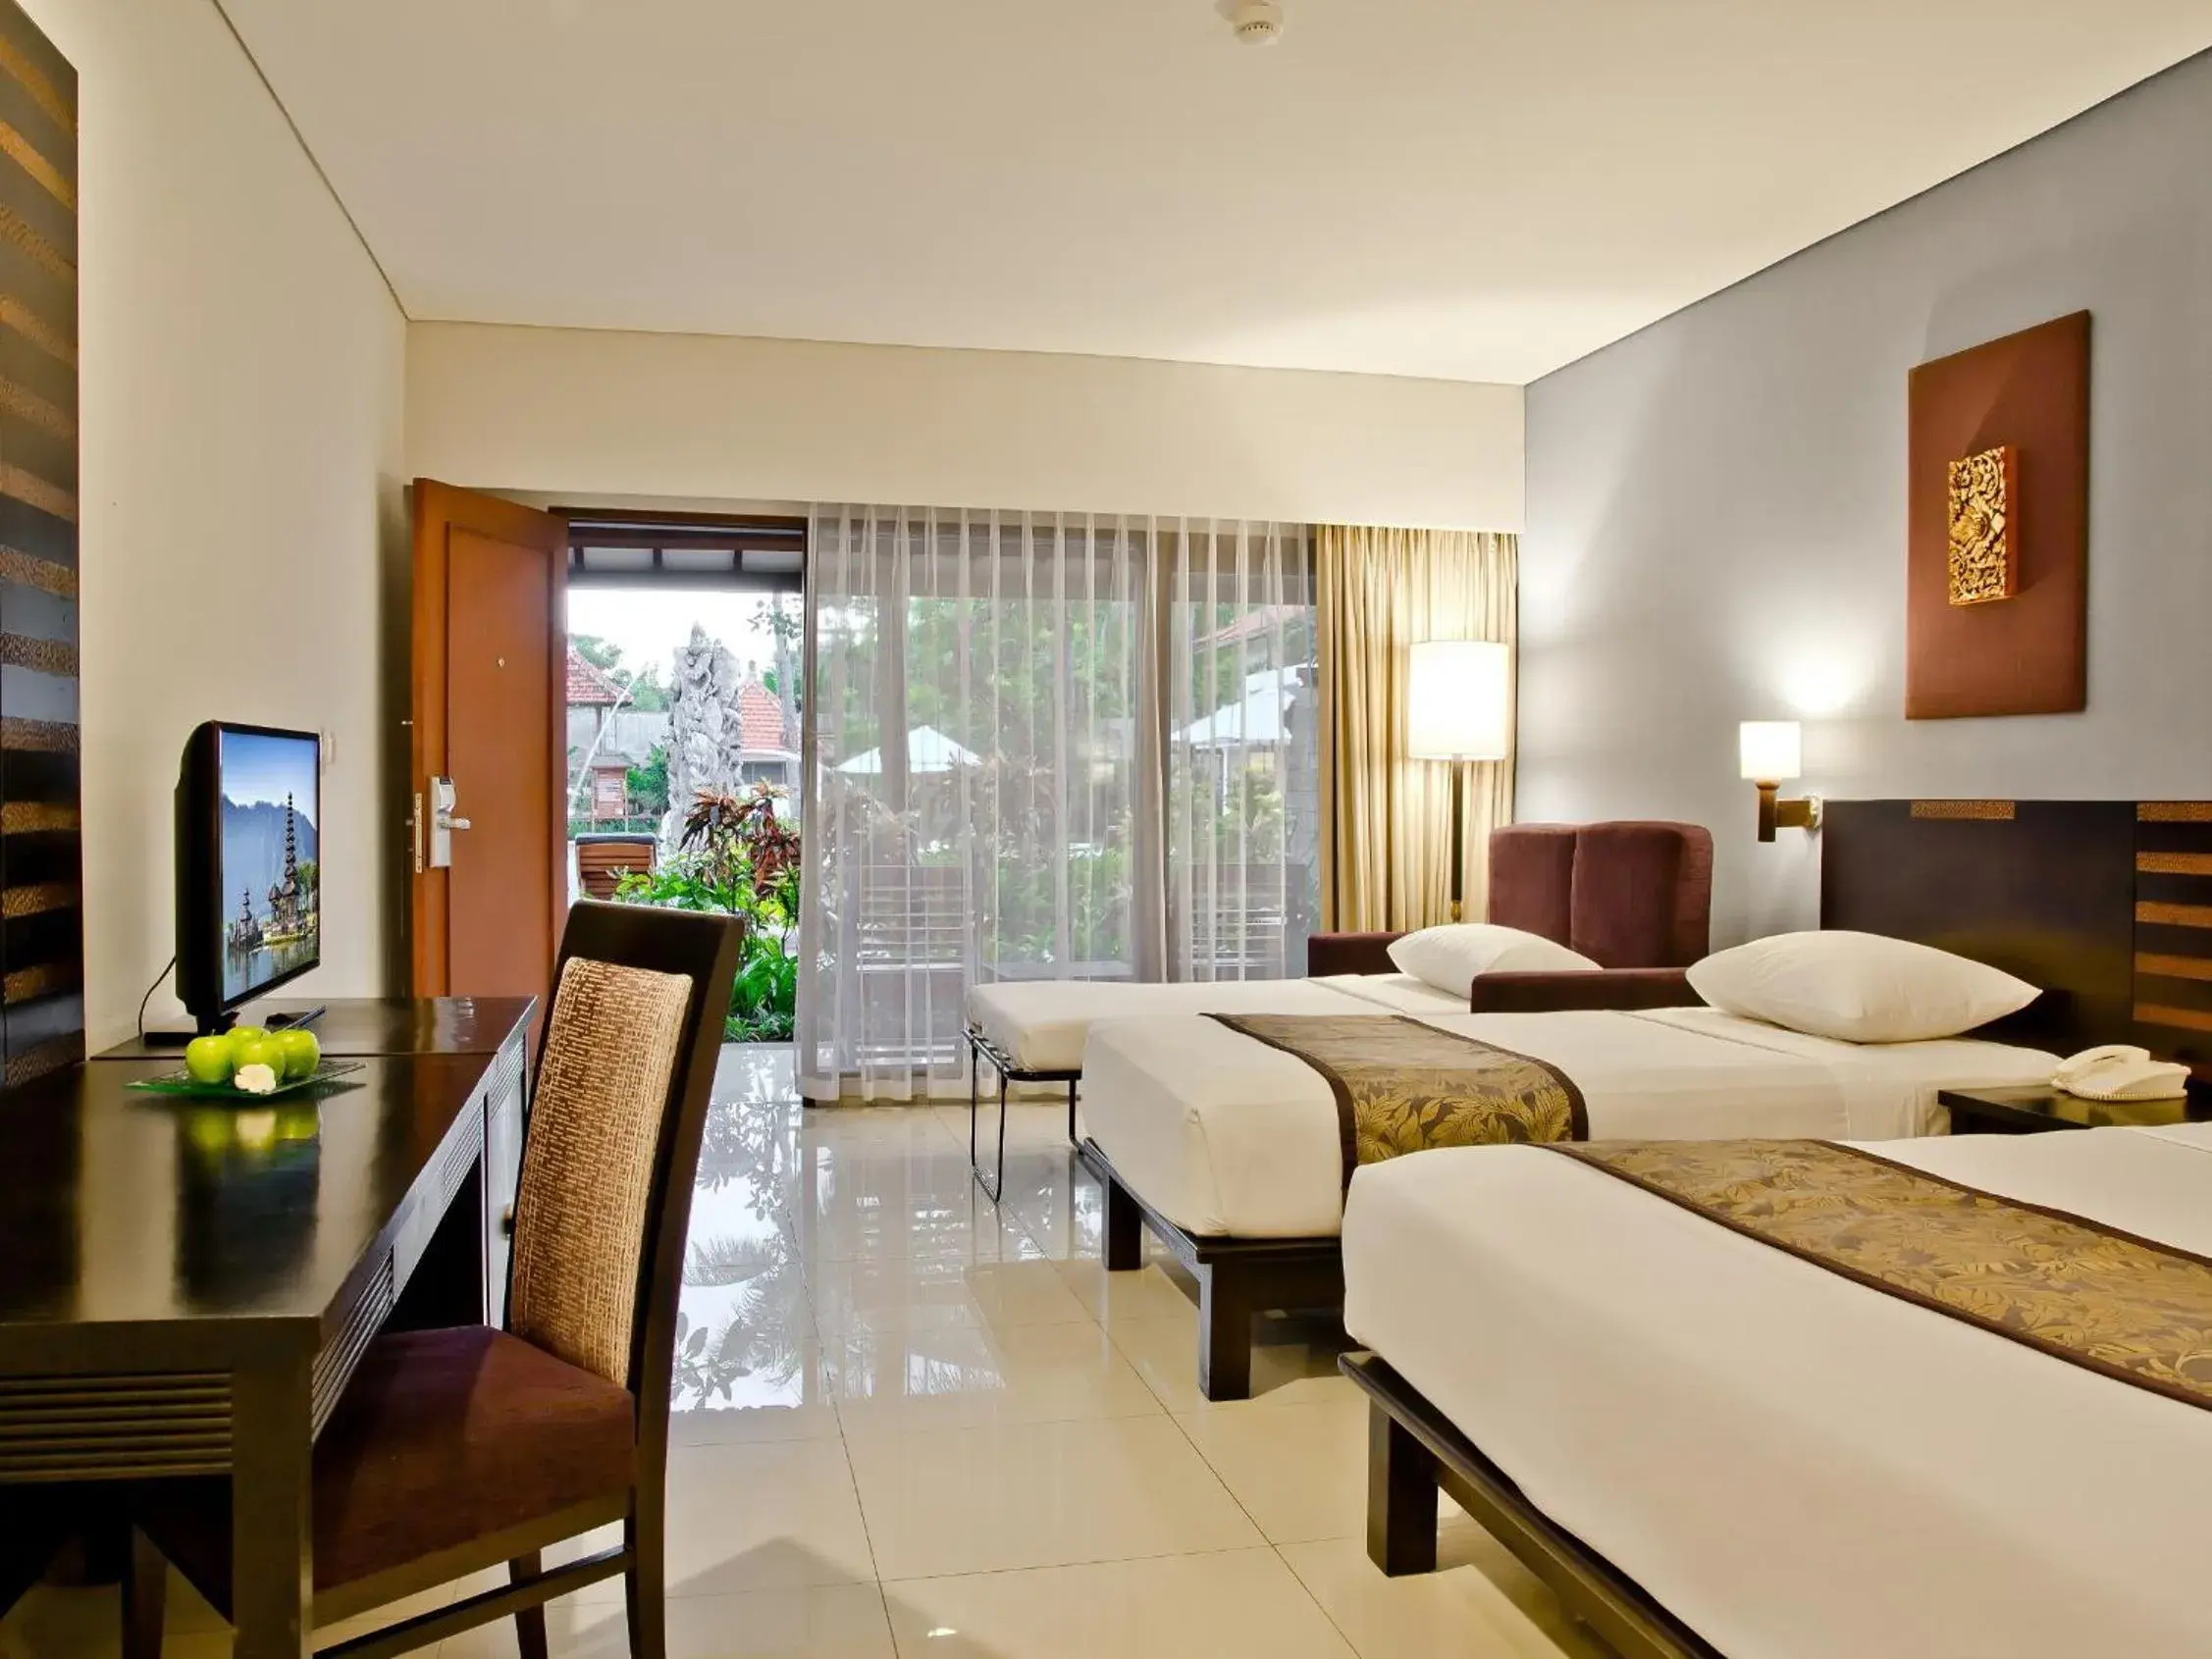 Deluxe Family Room in Bali Rani Hotel